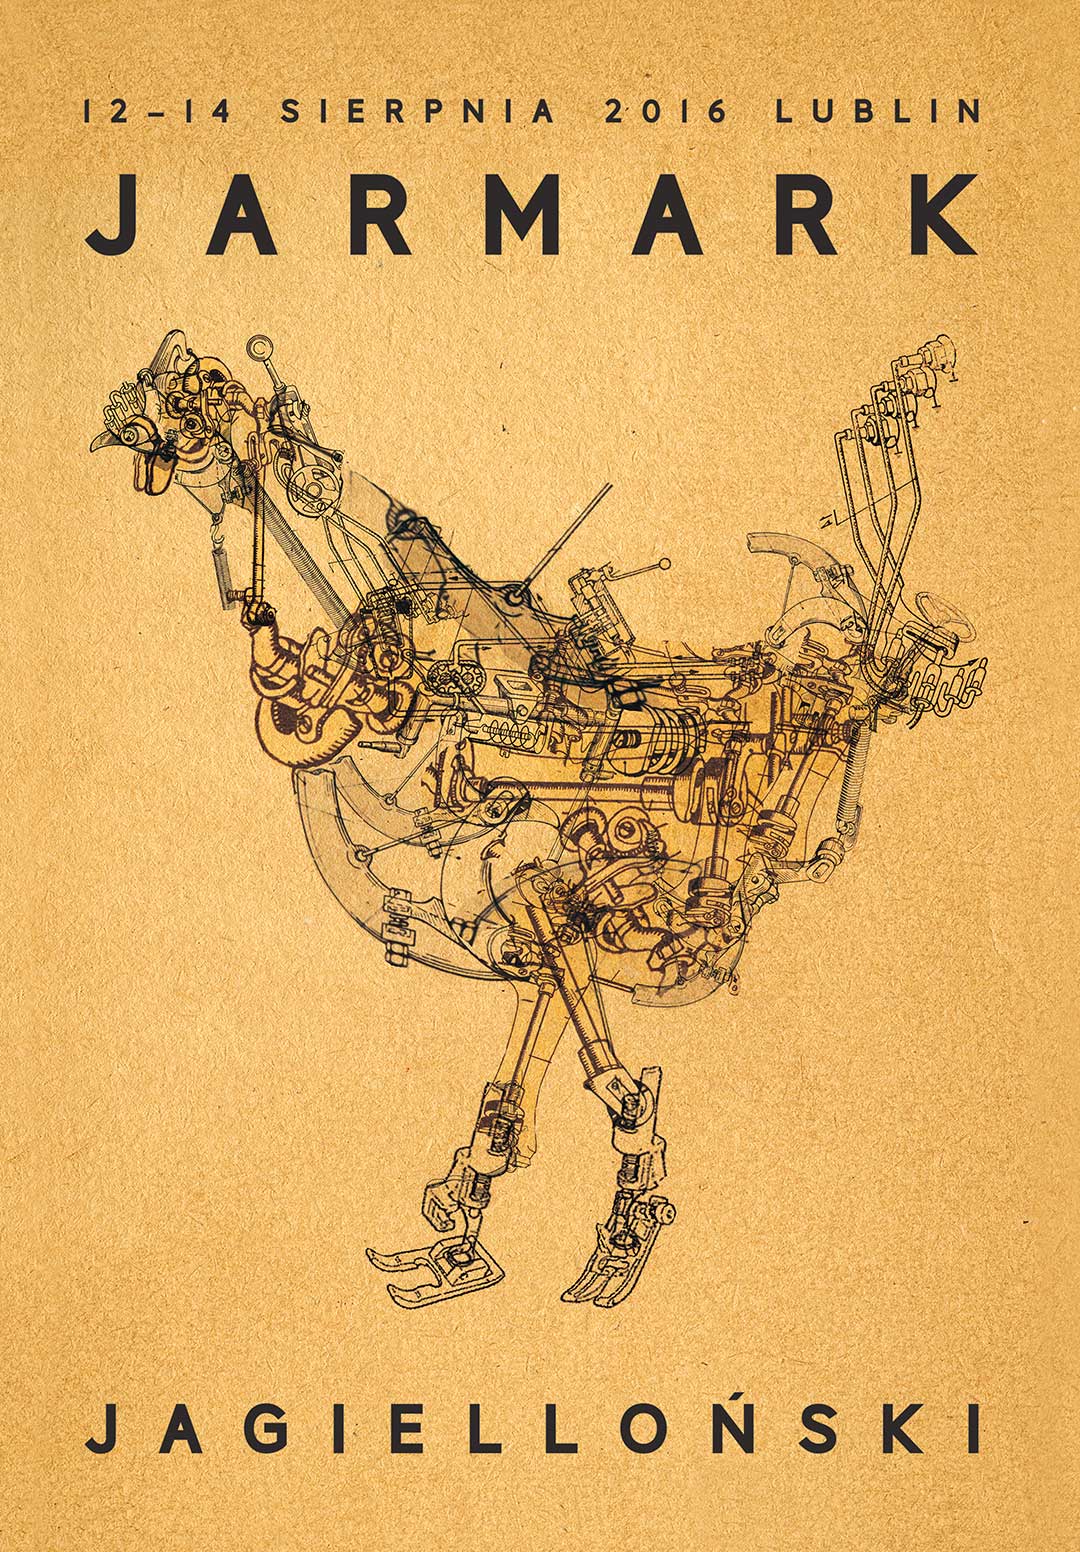 [Plakat Jarmarku Jagiellońskiego, beżowe tło, w centralnej części kura wykonana techniką kolażu z elementów przypominających części maszyny do szycia]